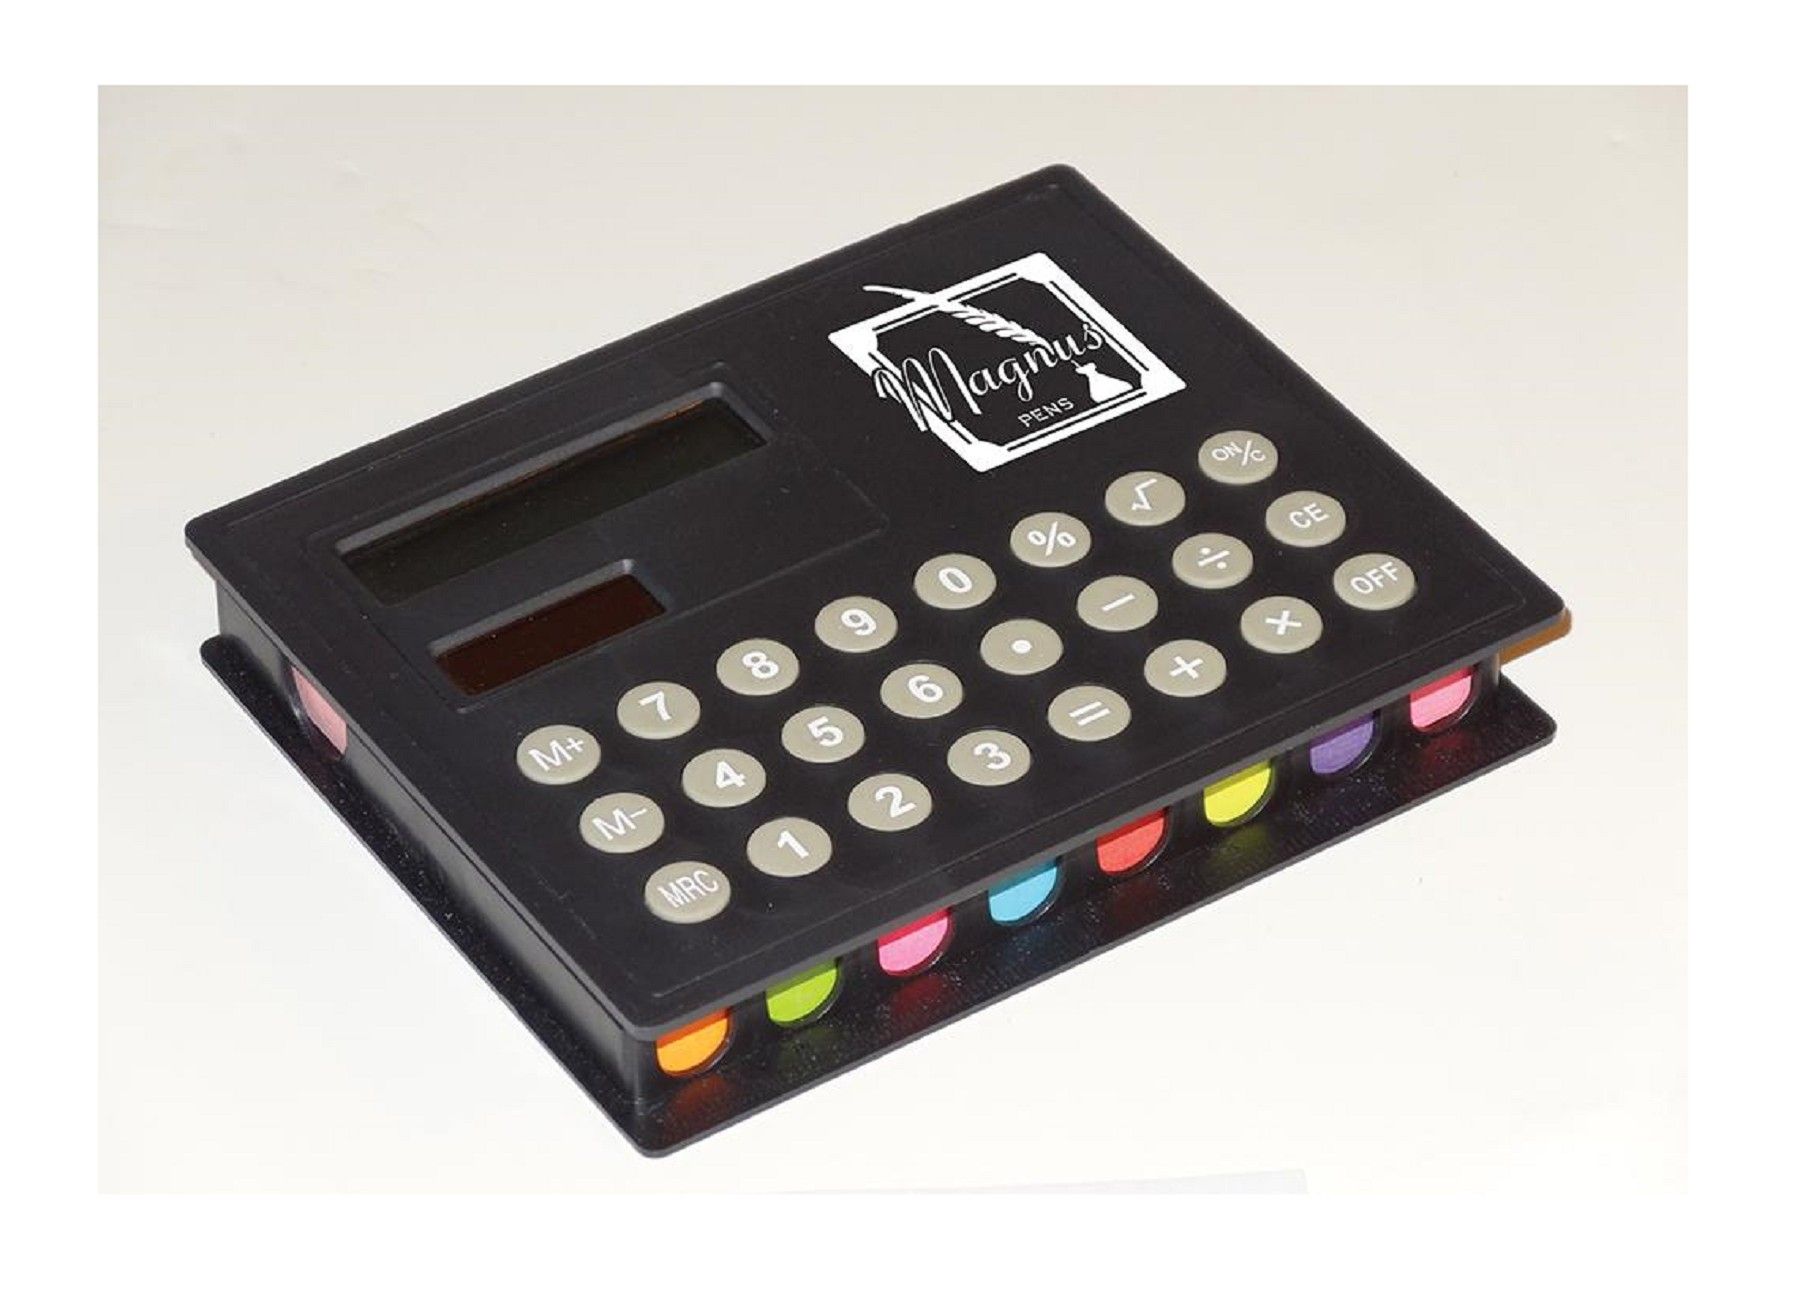 Calculator With Sticky Note & Sticky Flag Holder Combo